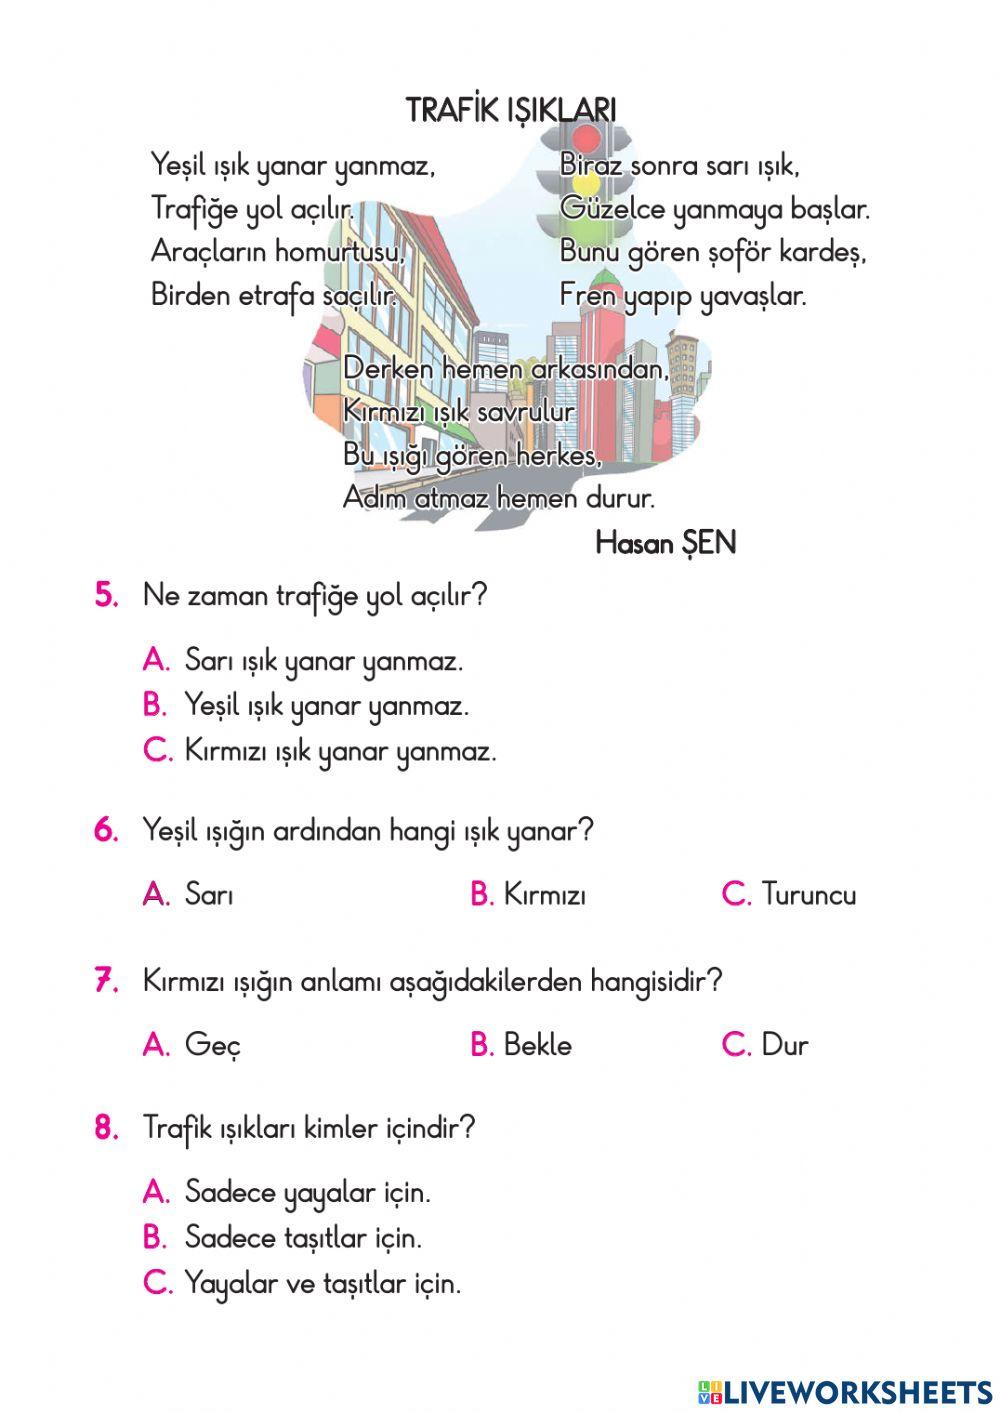 TEST-Türkçe Okuma Anlama